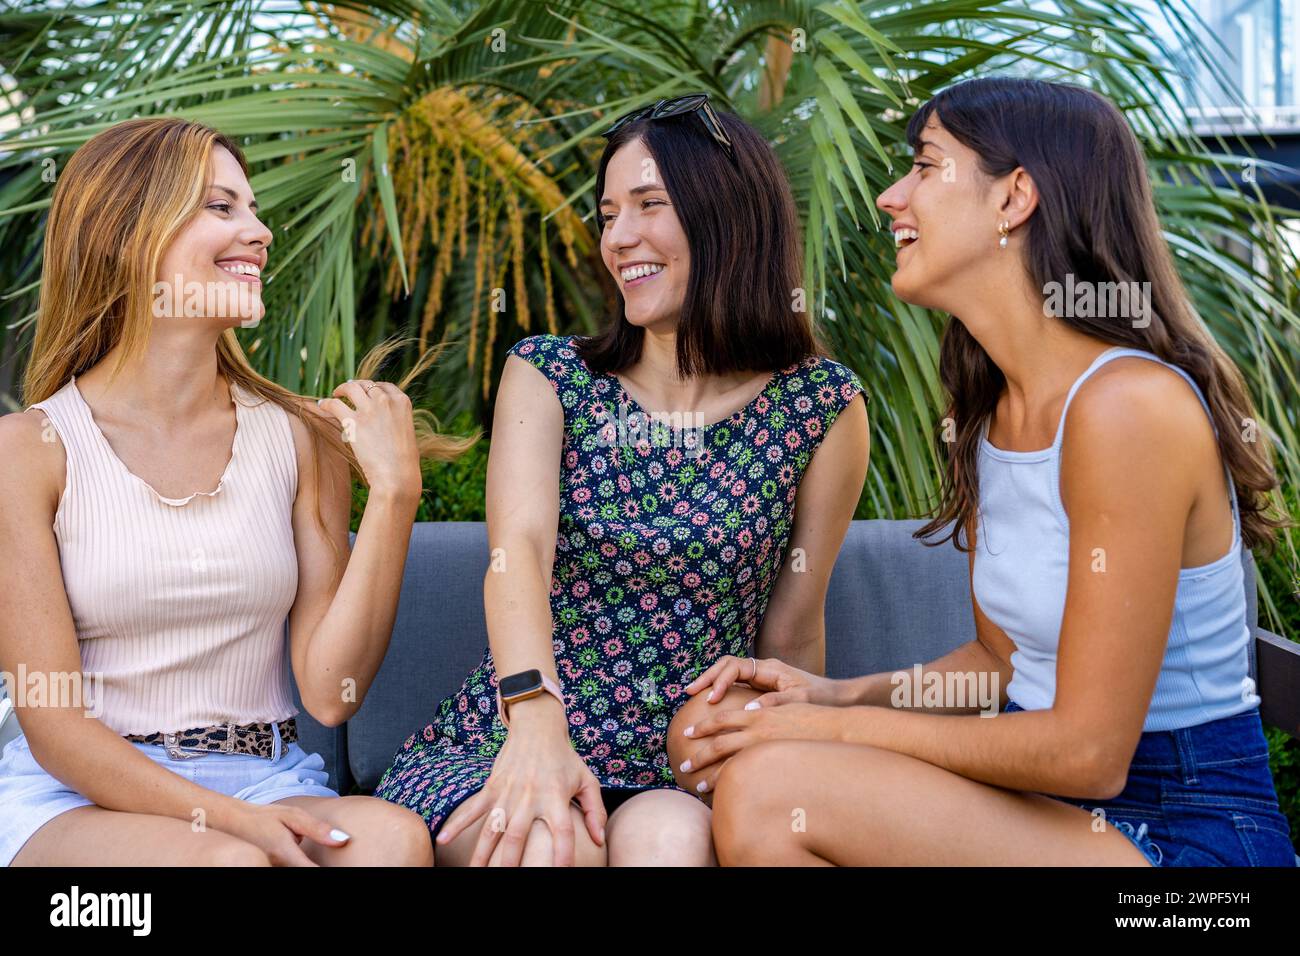 Drei schöne junge Frauen, die auf einer Couch plaudern Stockfoto